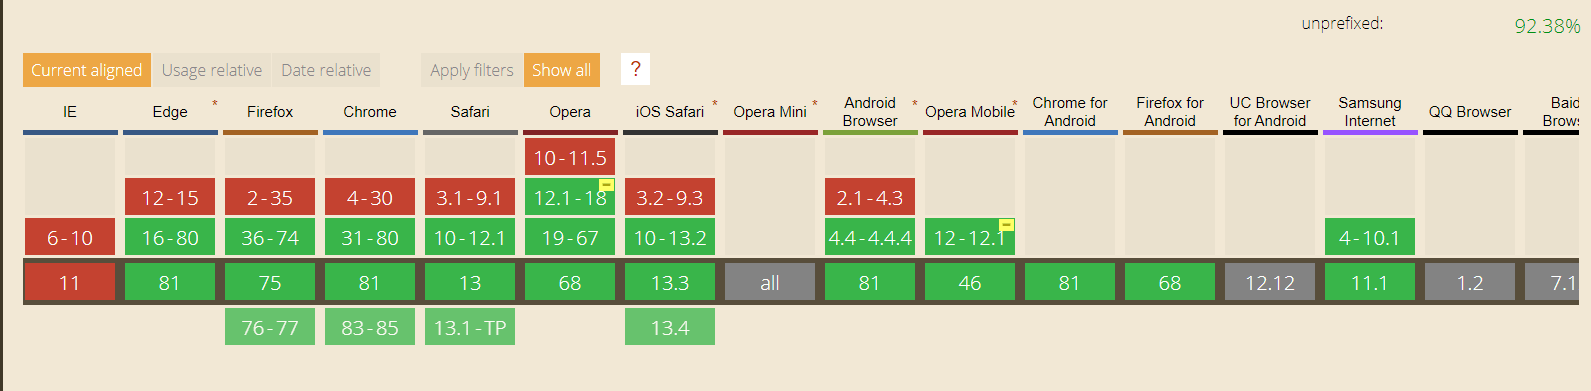 operamini-browser-stats